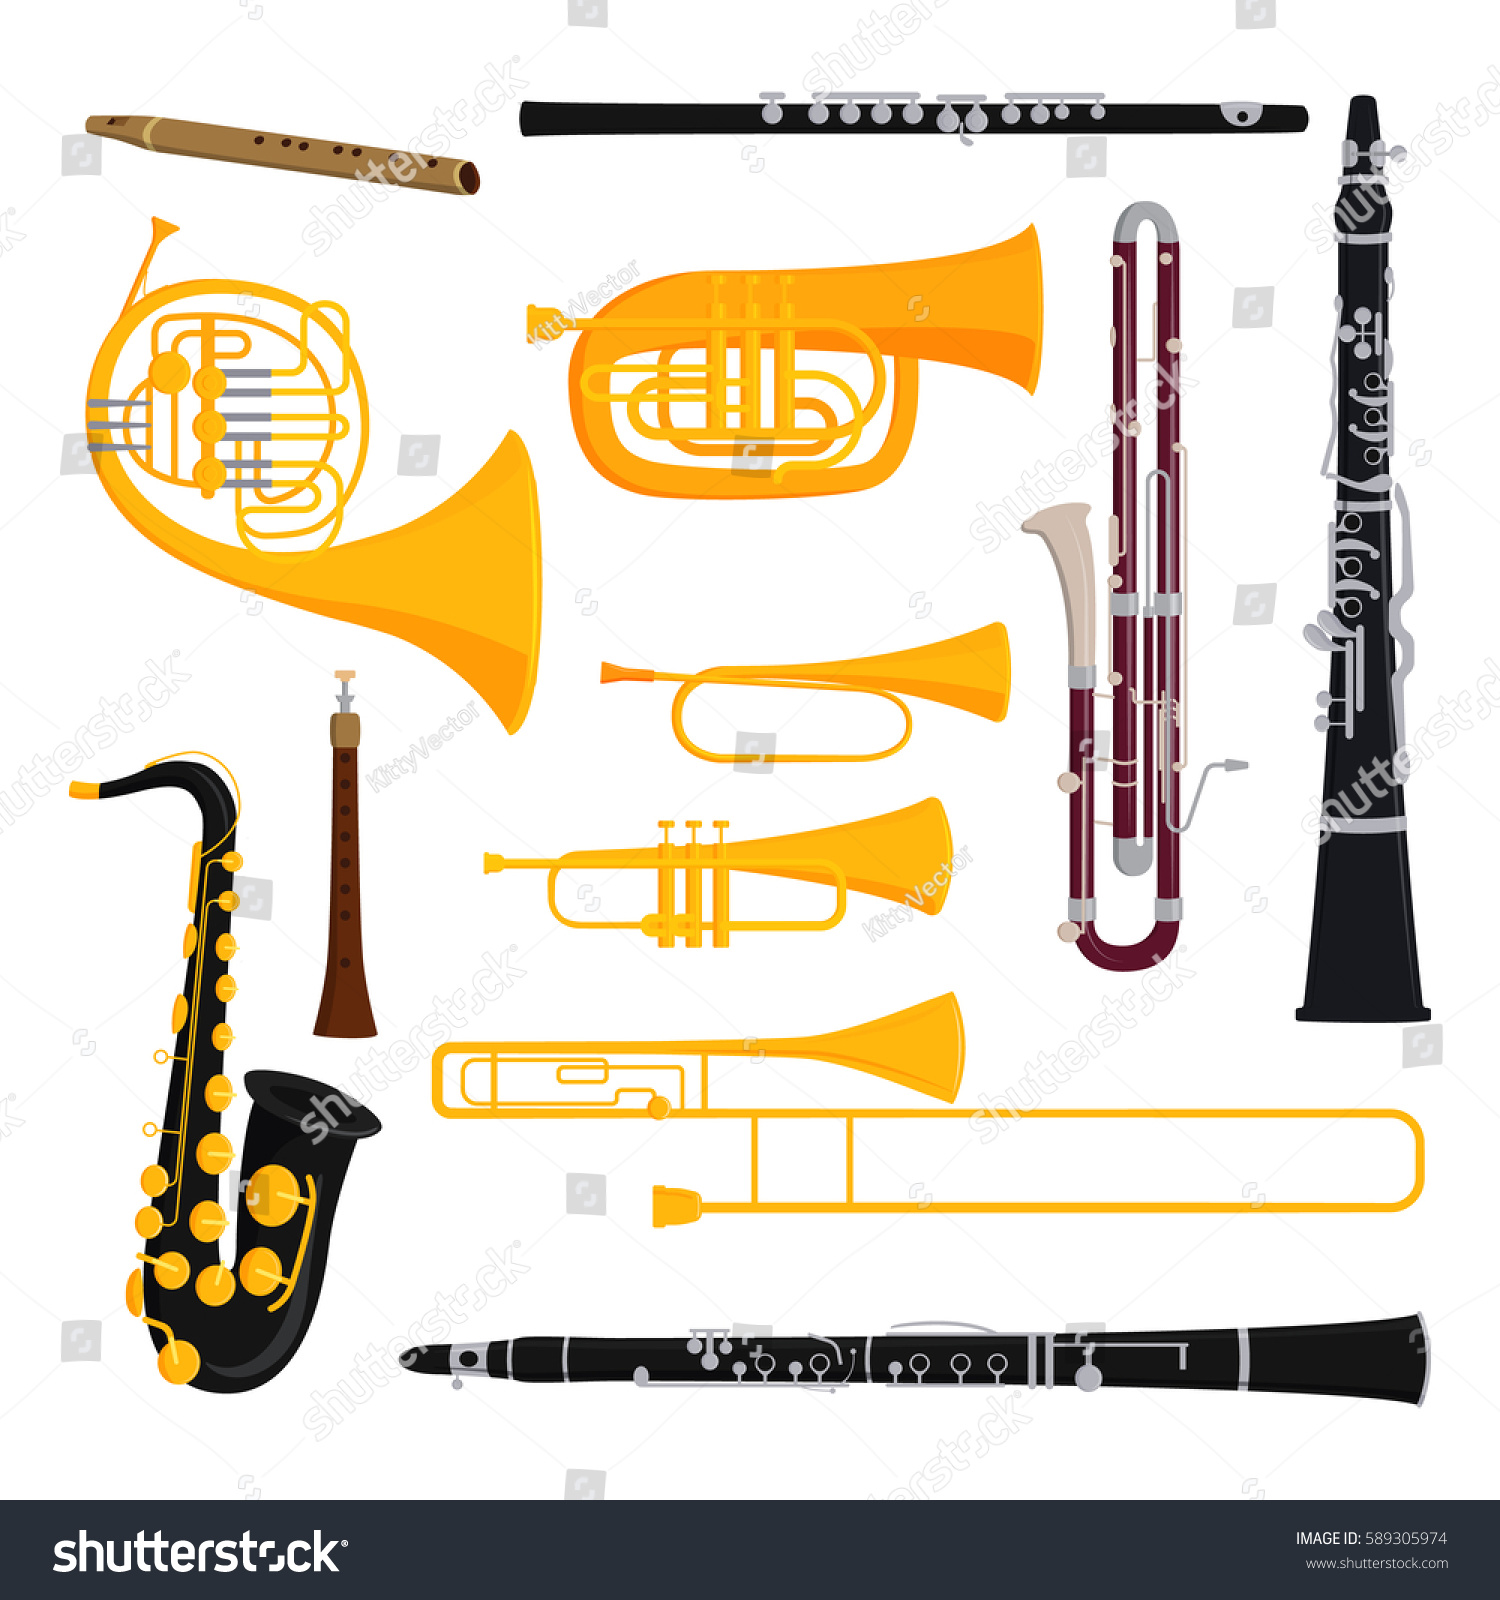 33,731 Blow instruments Images, Stock Photos & Vectors | Shutterstock